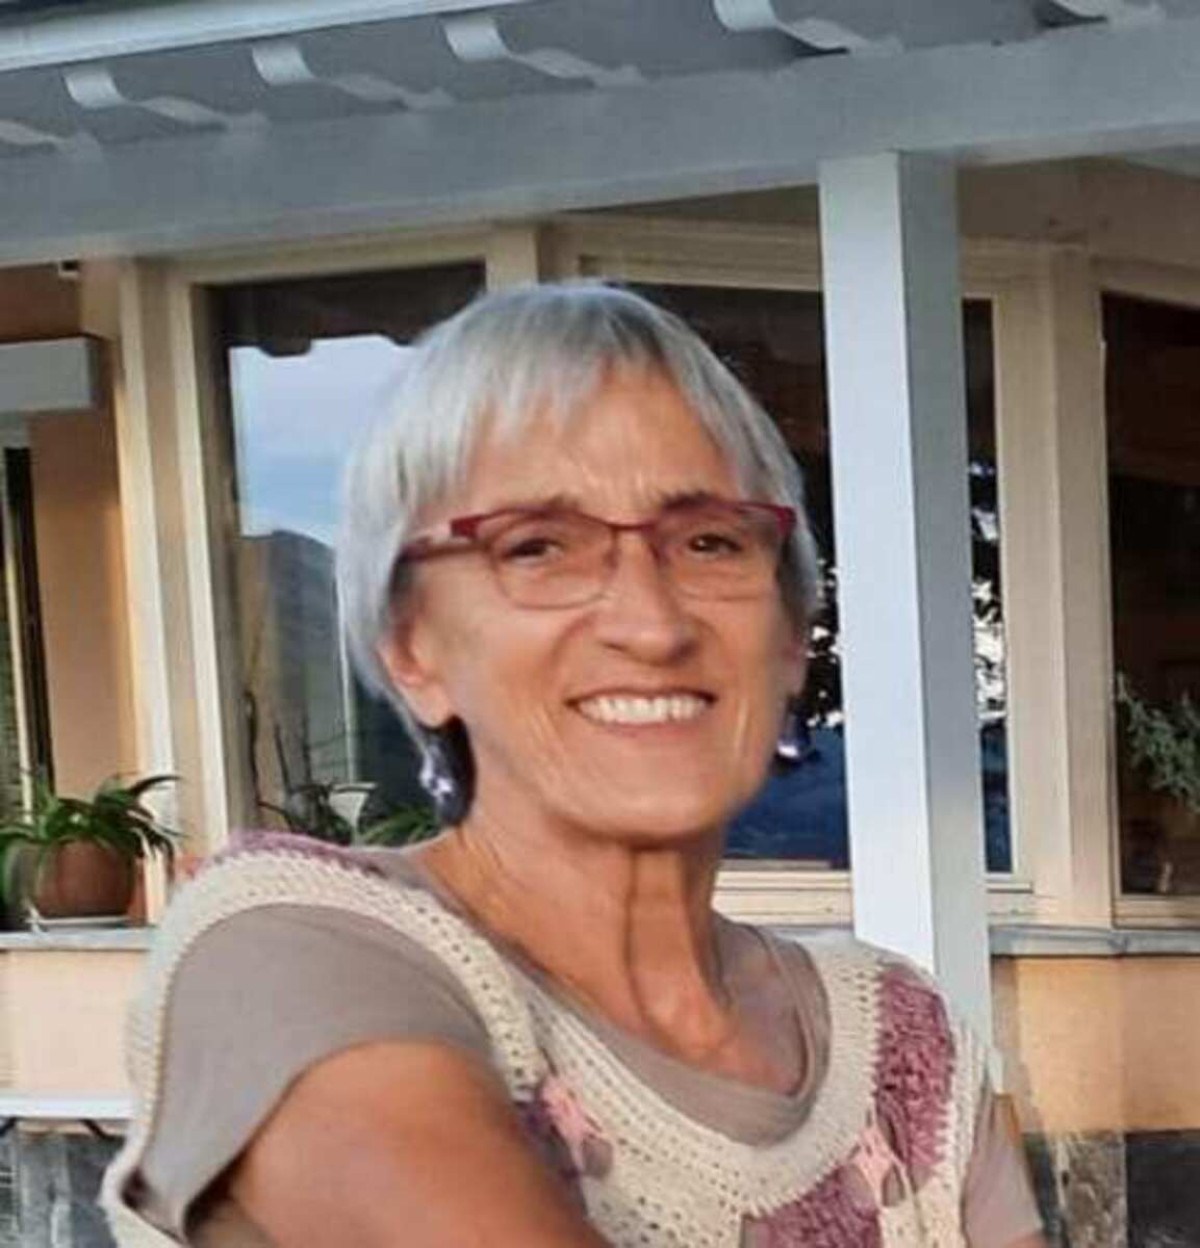 Carmen Charo Pérez, 65, former member of Opus Dei, resident of Tarragona (Spain)